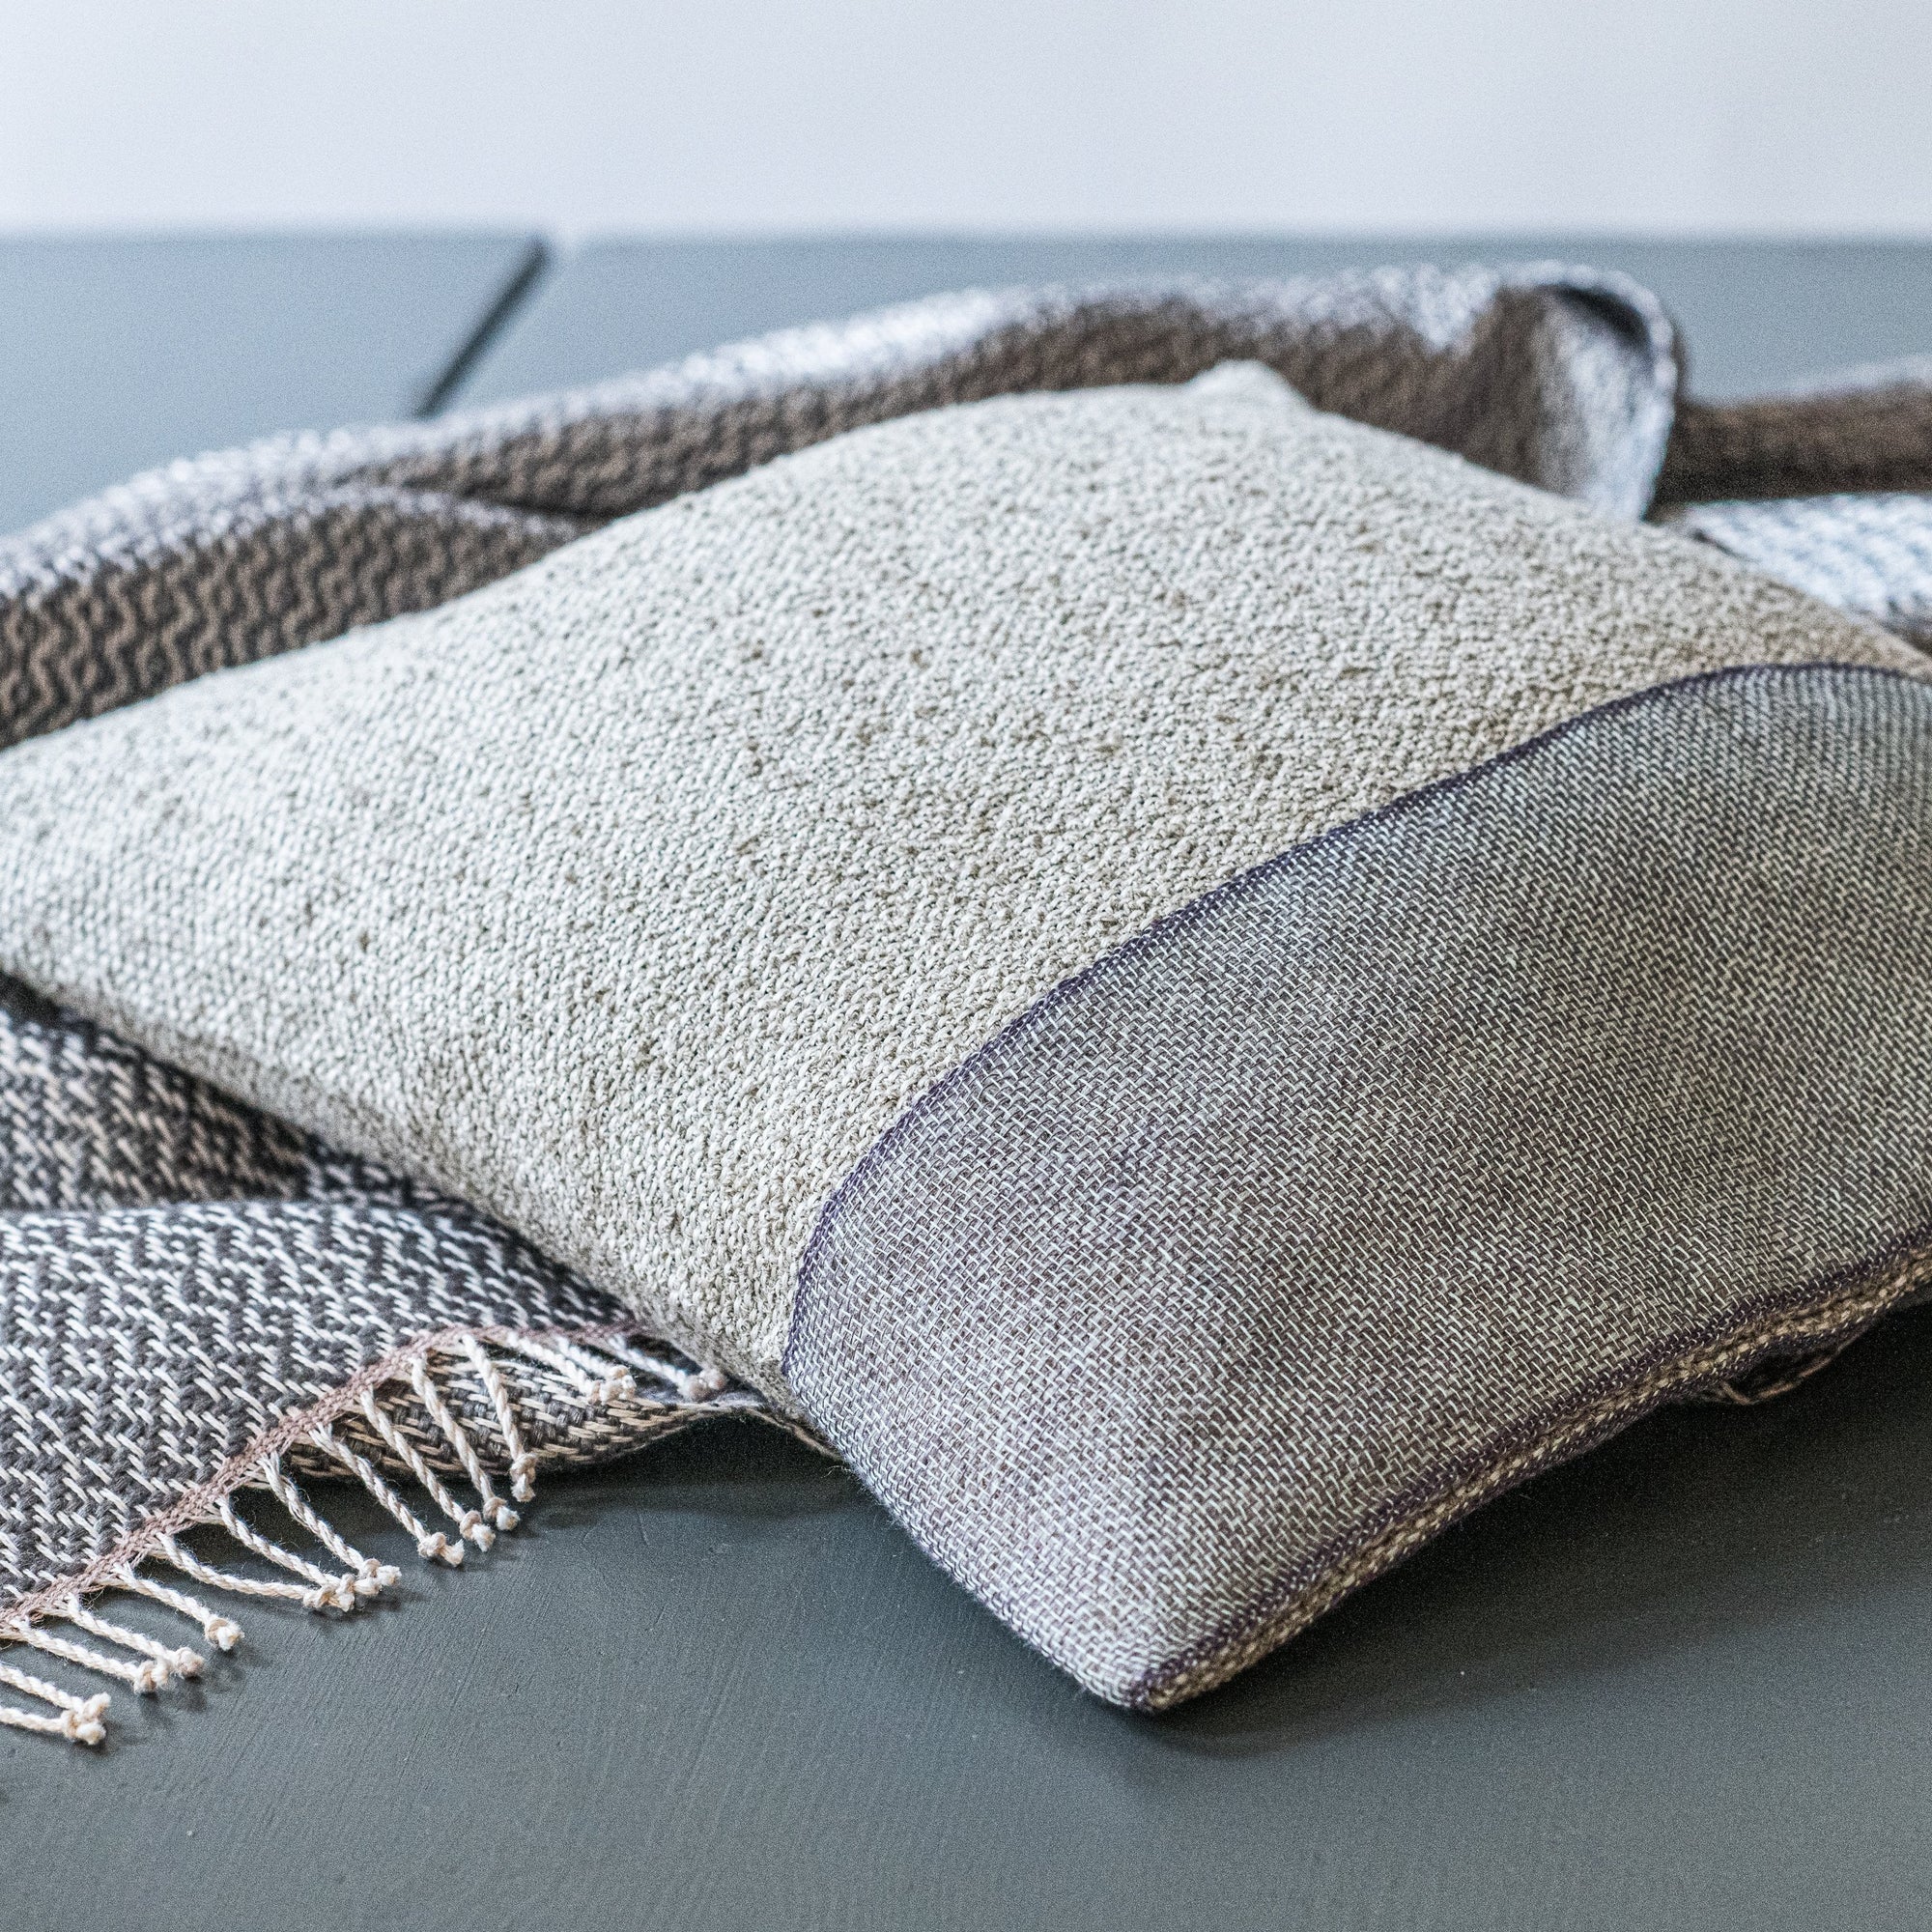 Linen boucle cushion 40x40cm